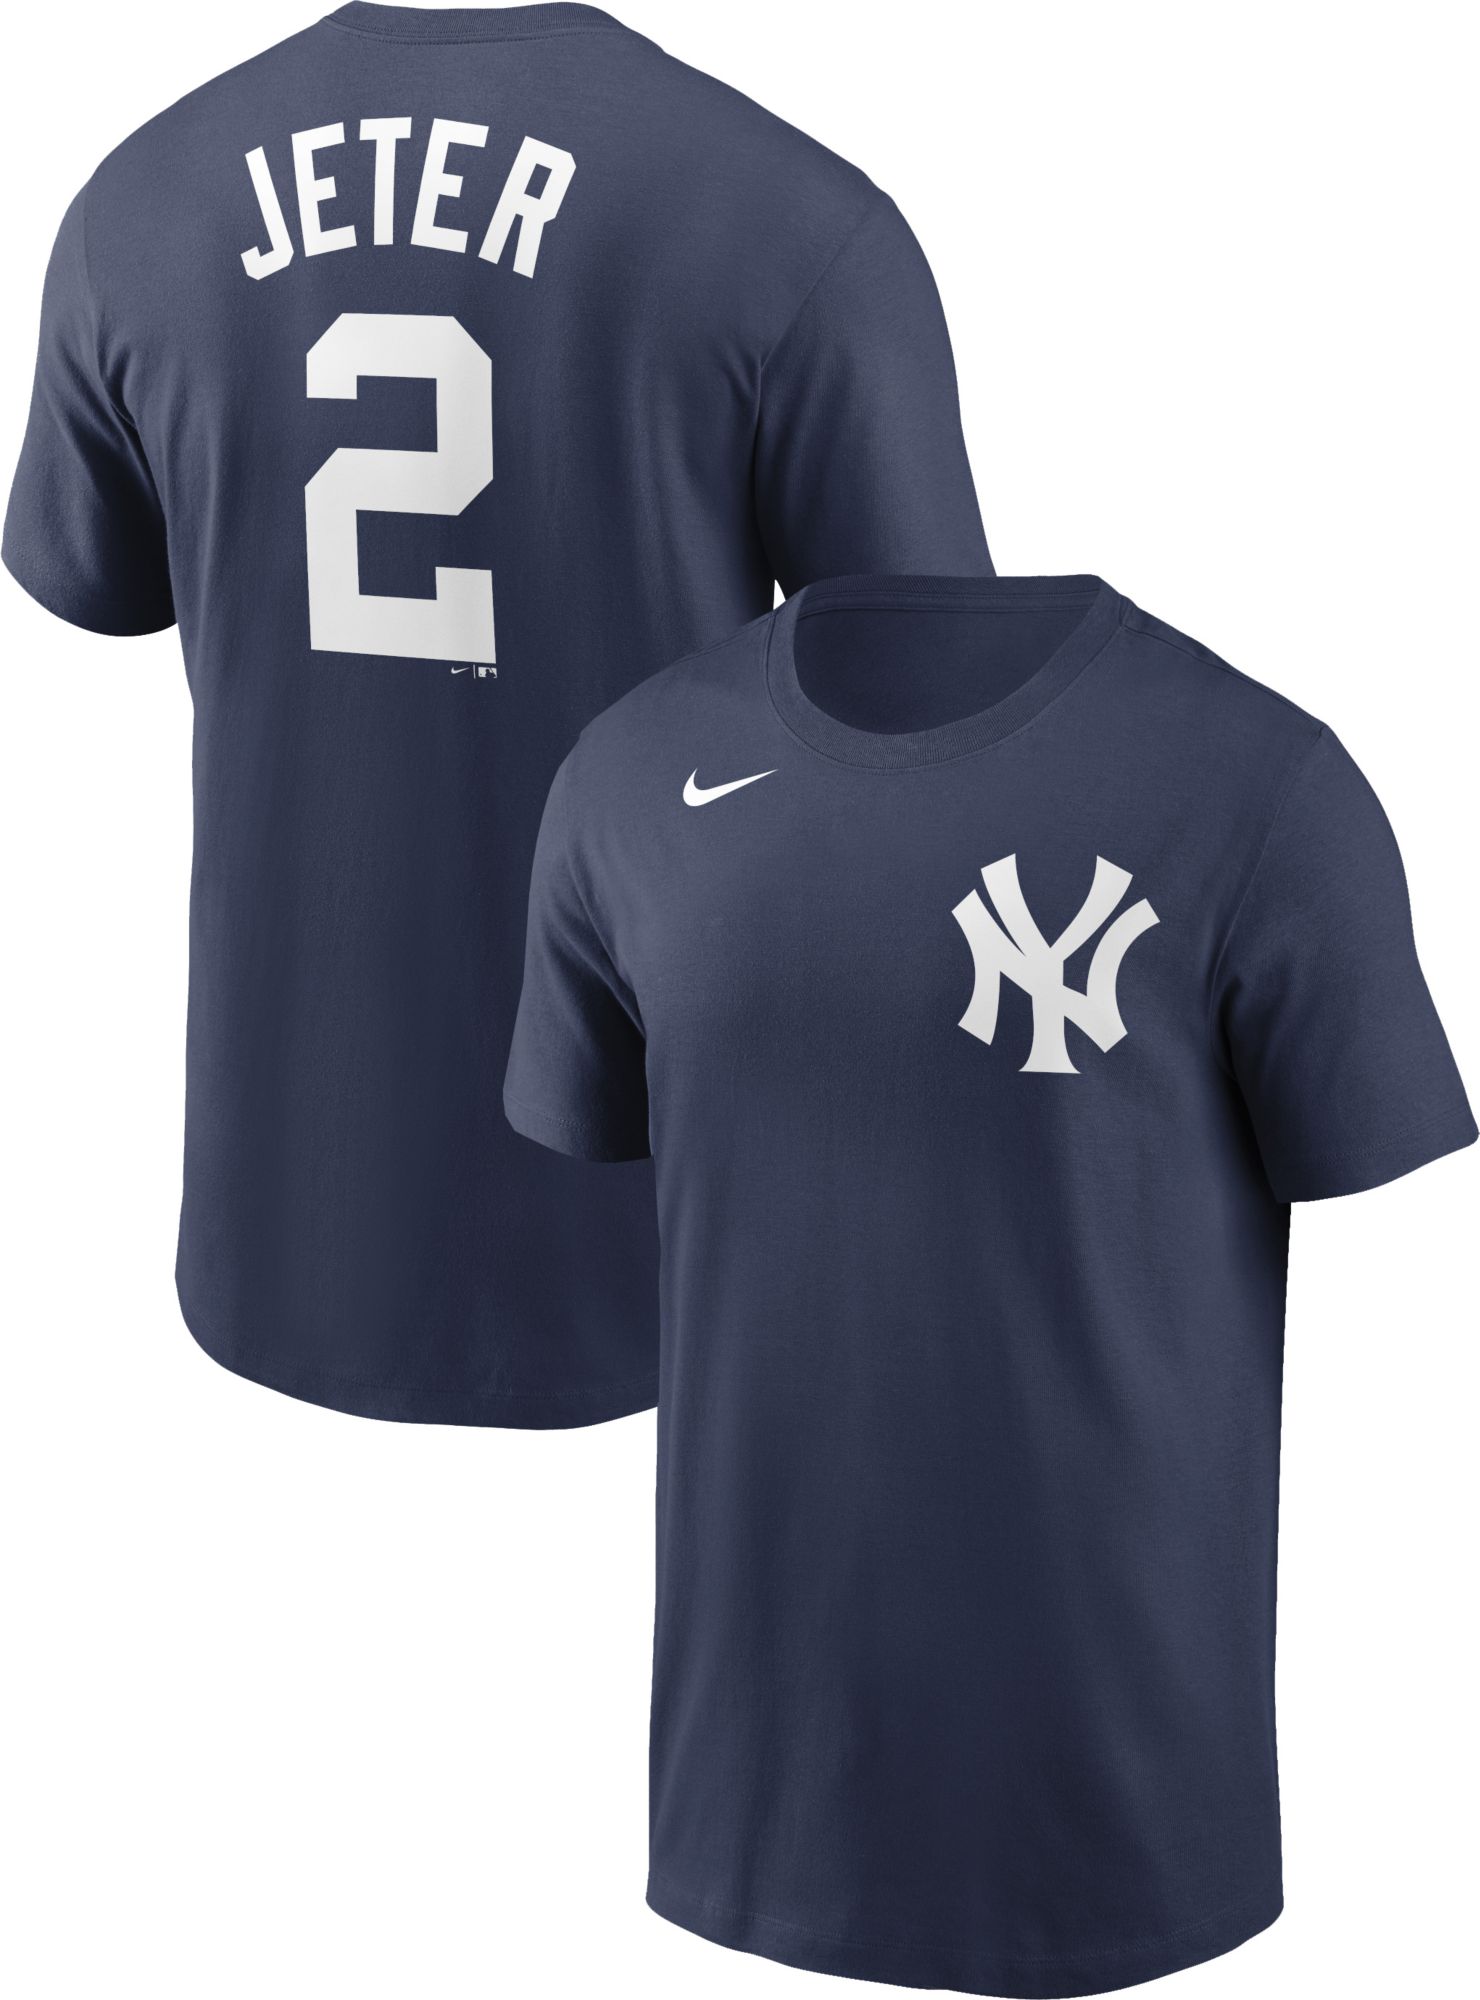 New York Yankees Aaron Judge 99 Derek Jeter 2 T-Shirt - Anynee